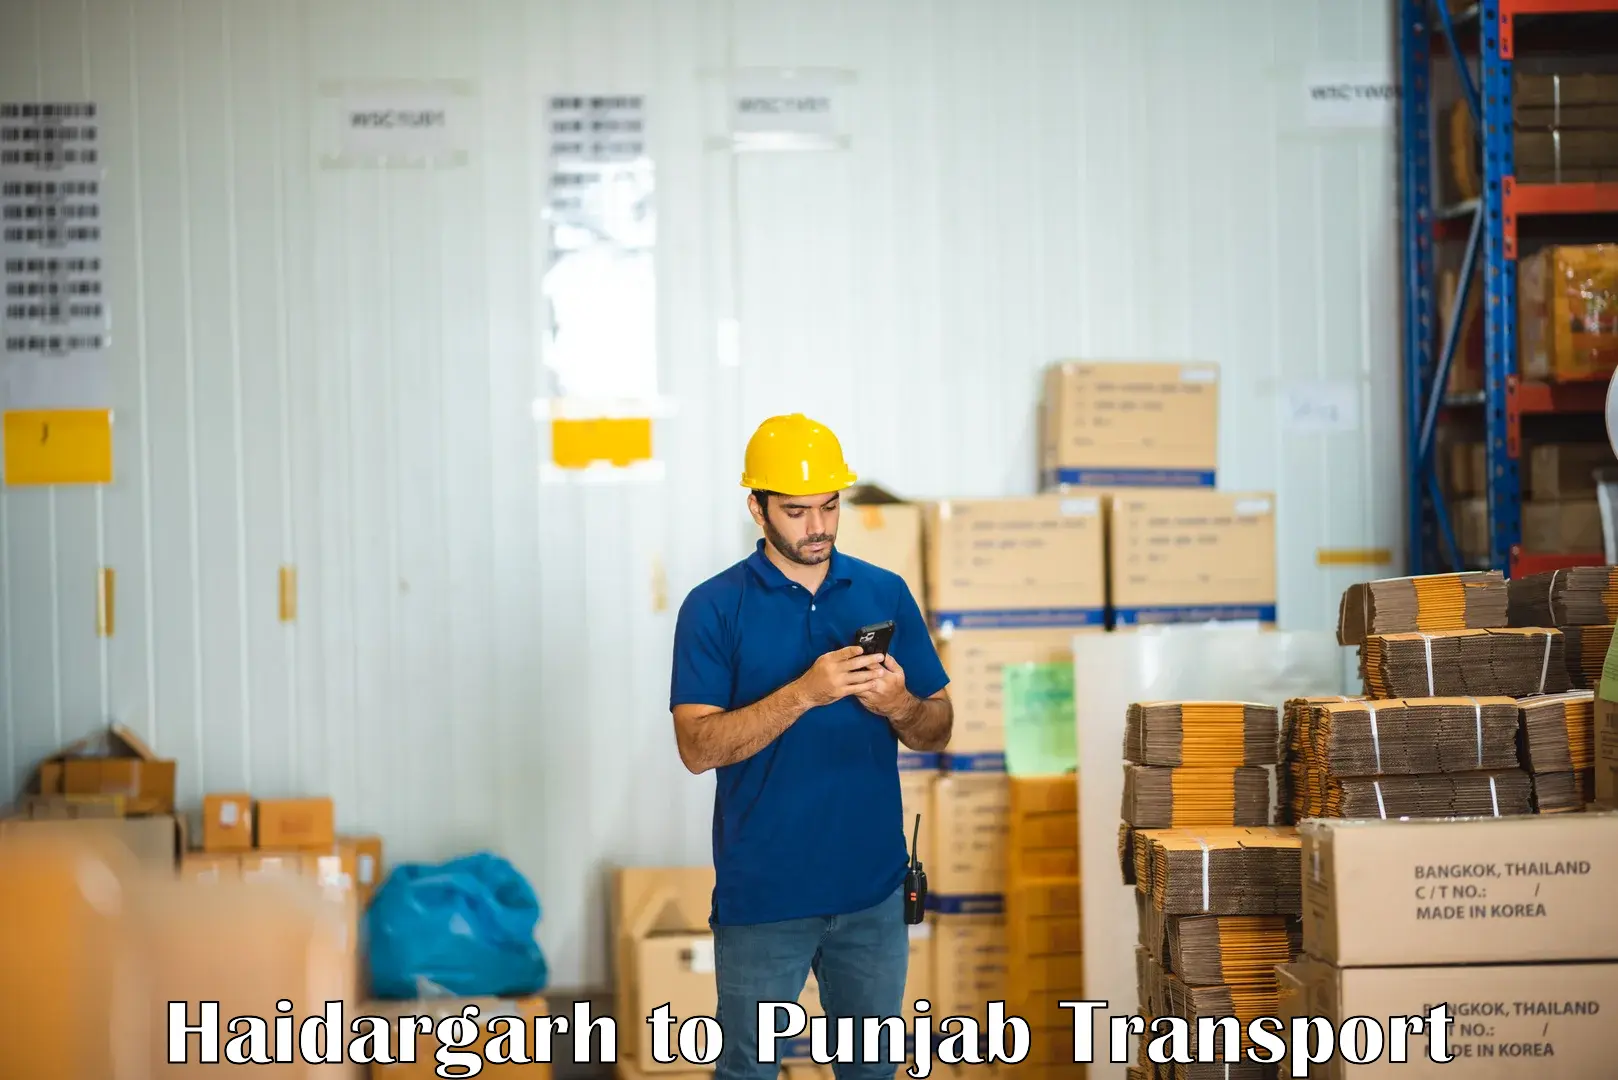 Online transport booking Haidargarh to Batala